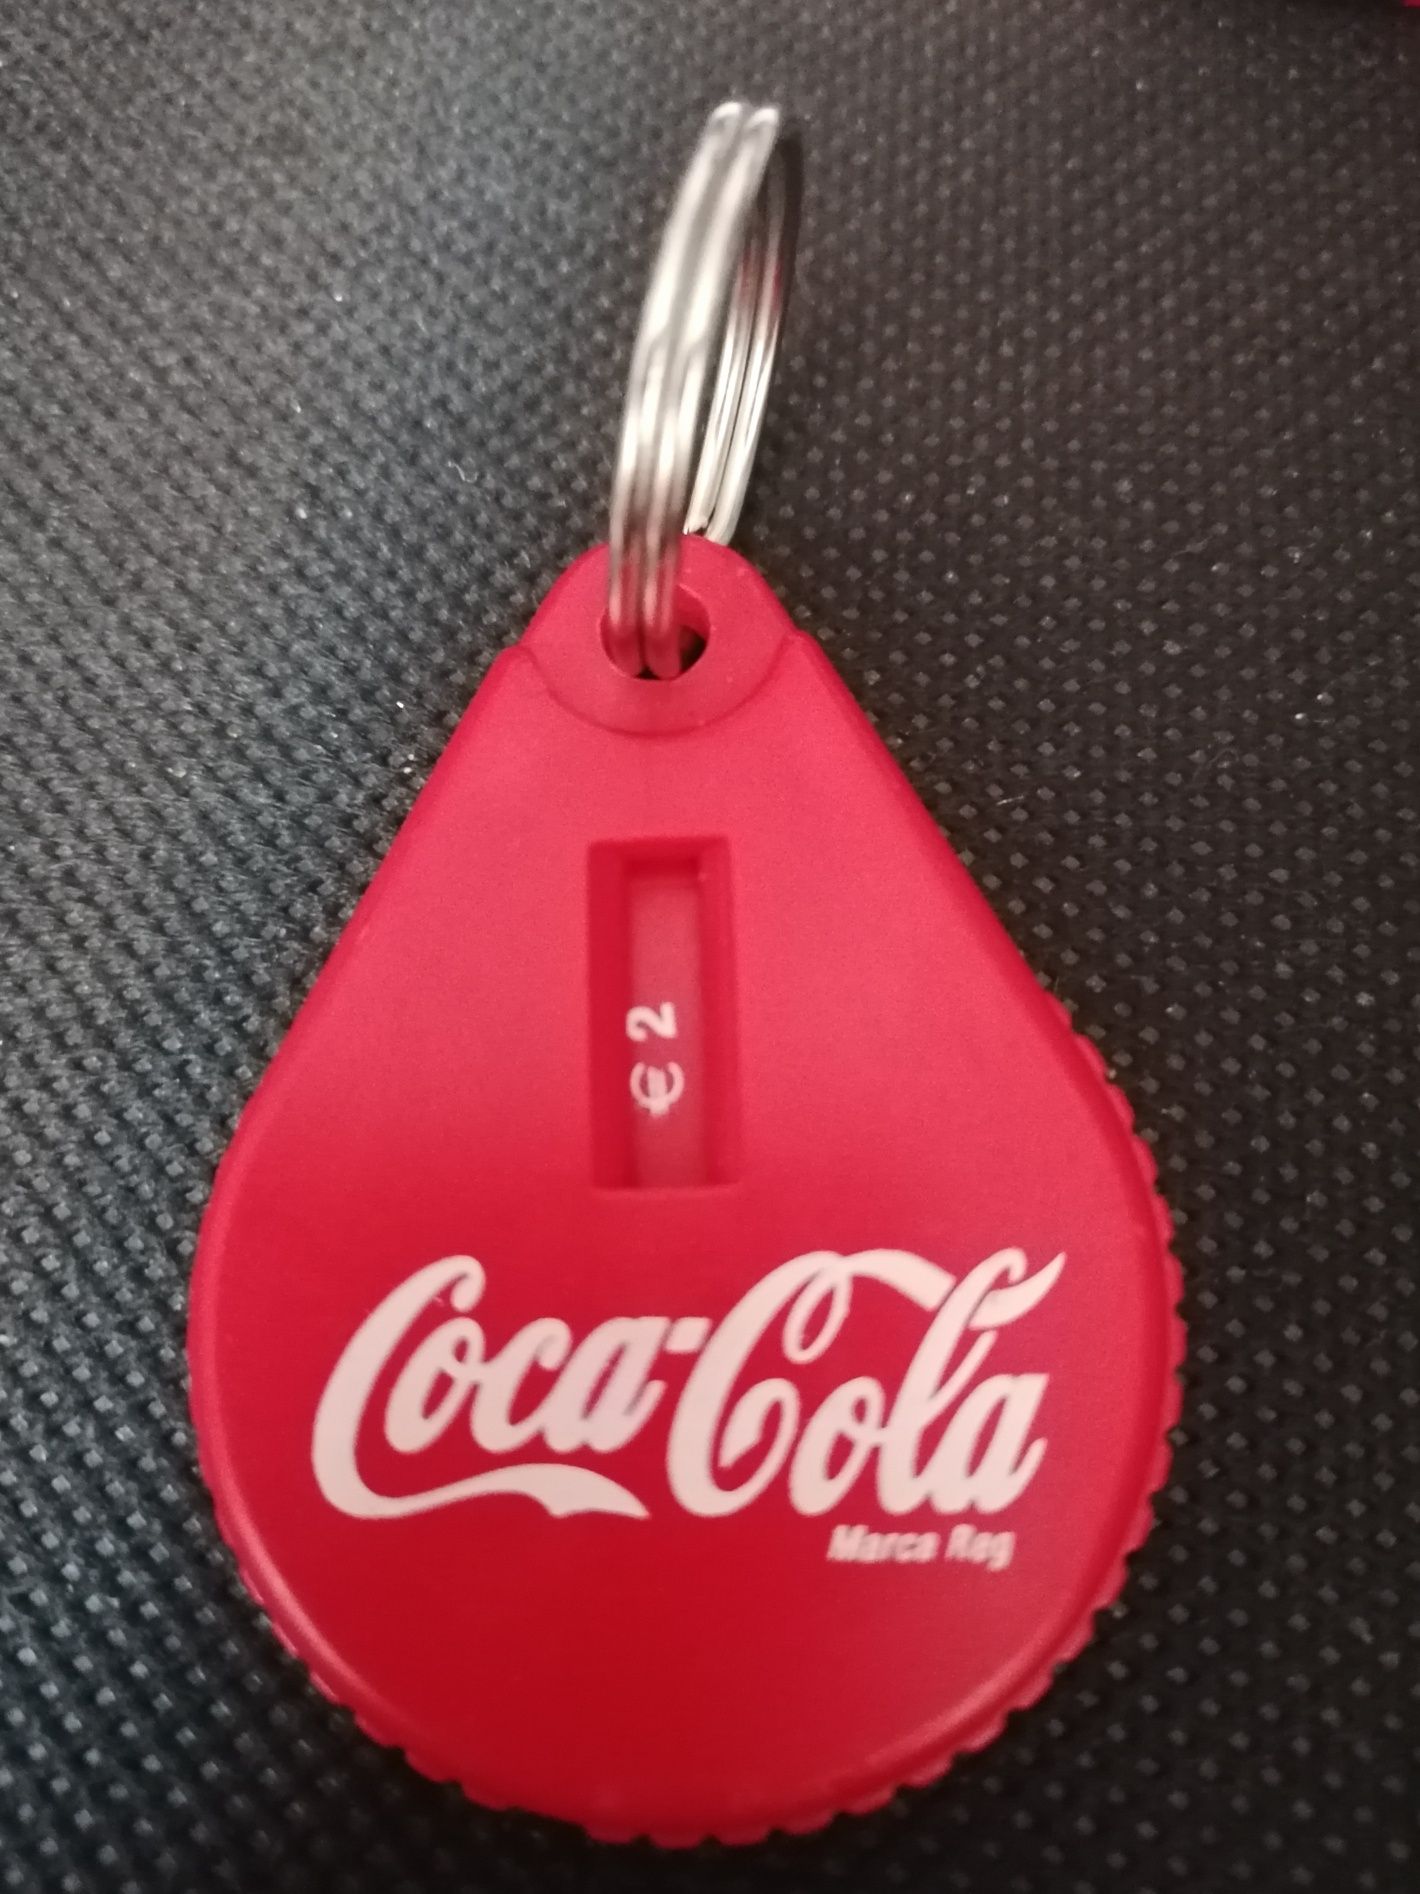 Diversos da Coca Cola, bases, esferográfica, conversor e abre cápsulas